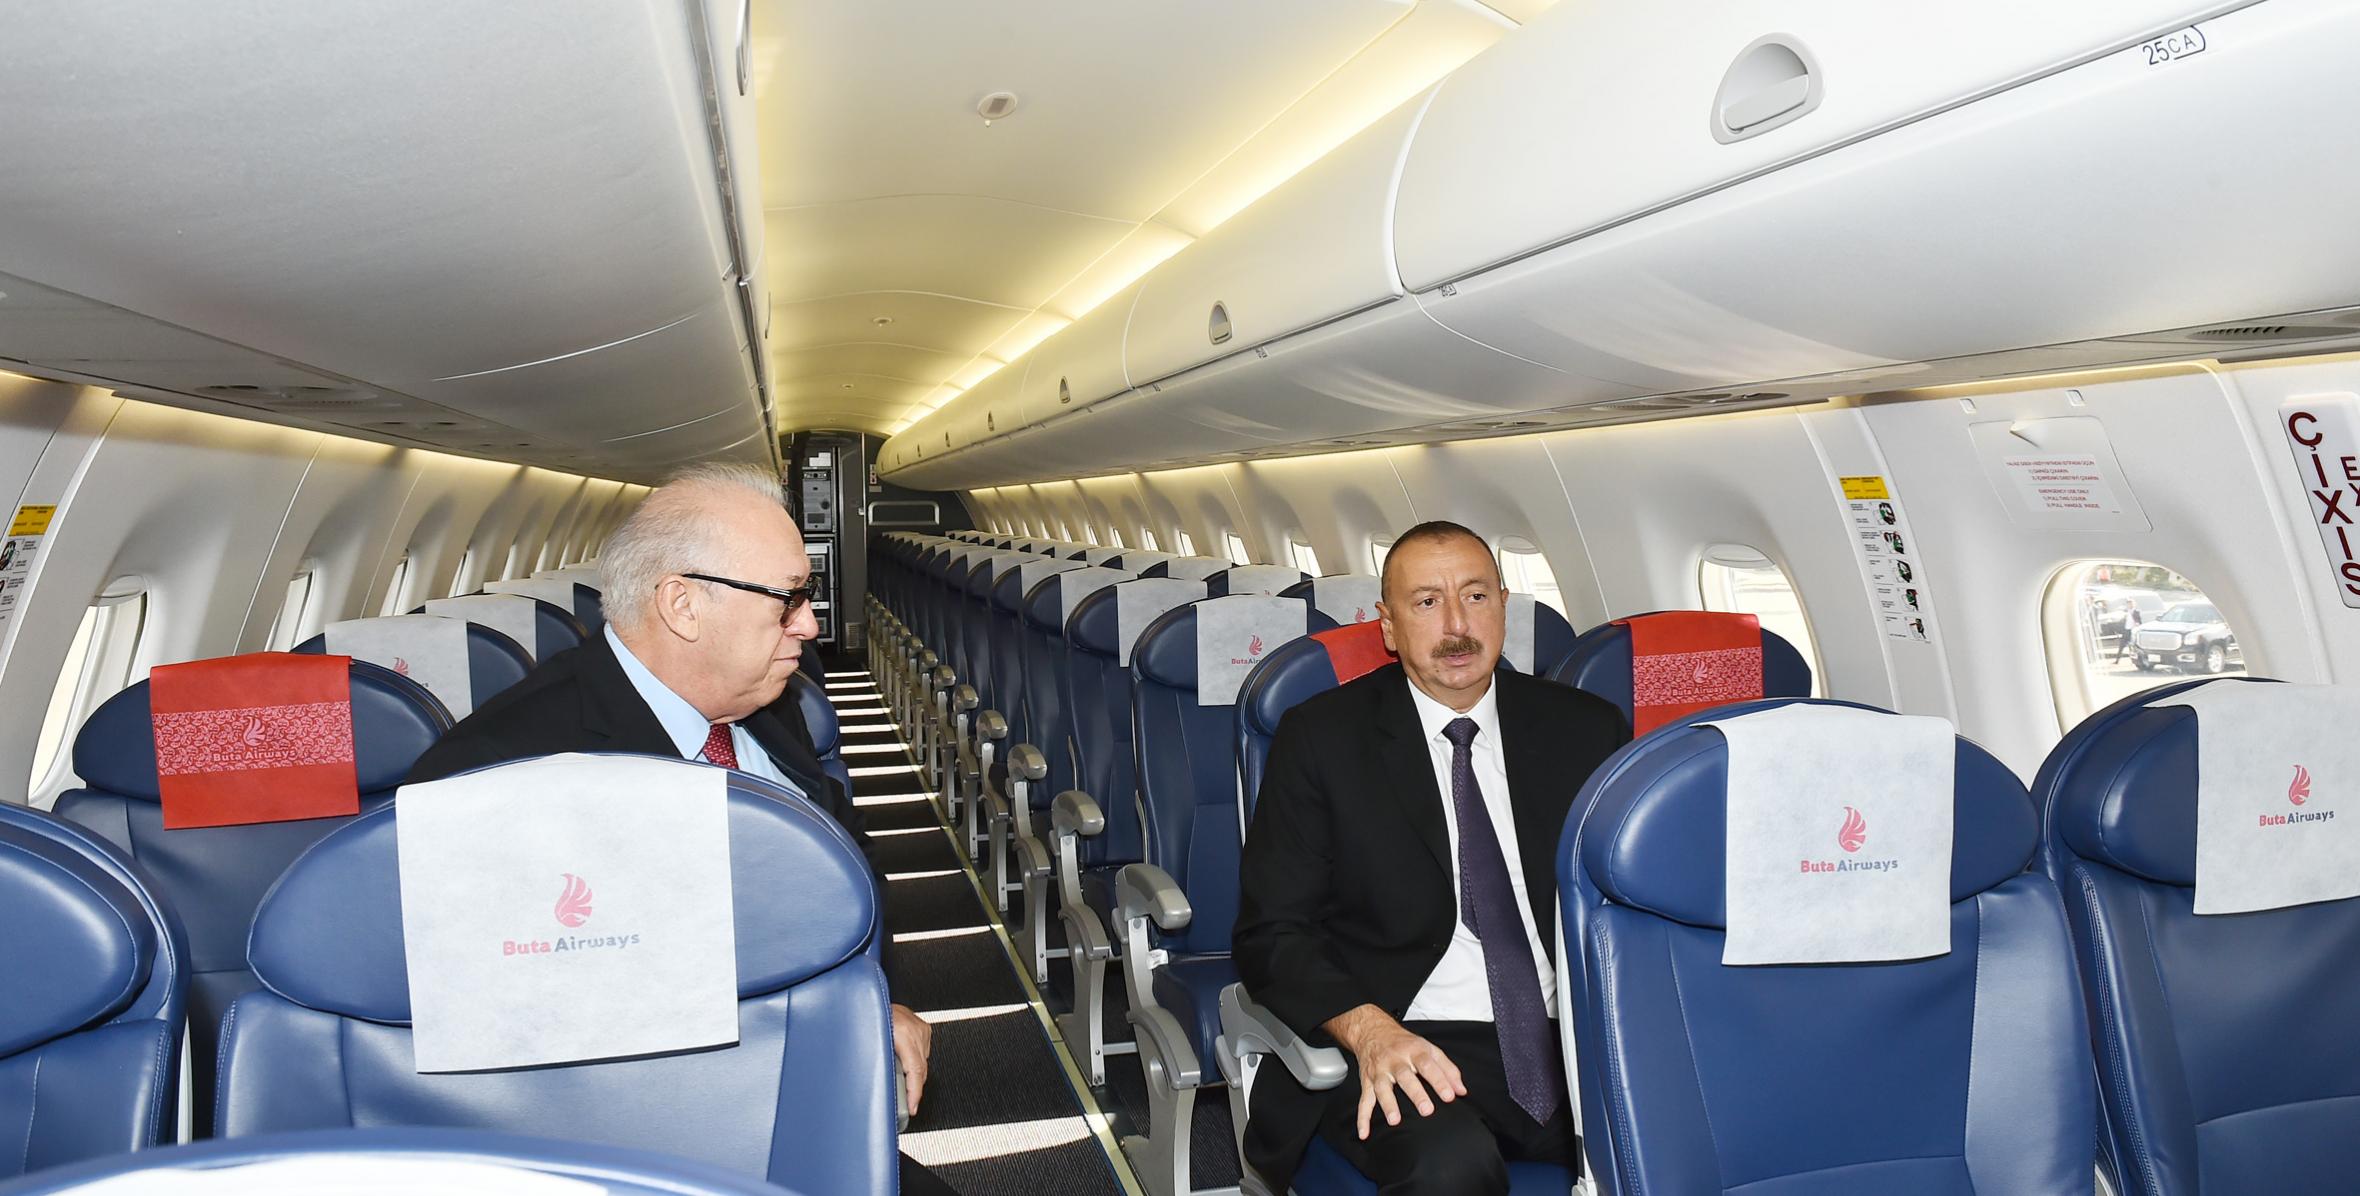 İlham Əliyev “Buta Airways” aviaşirkətinin Bakıya gətirilən ilk “Embraer 190” təyyarəsi ilə tanış olub